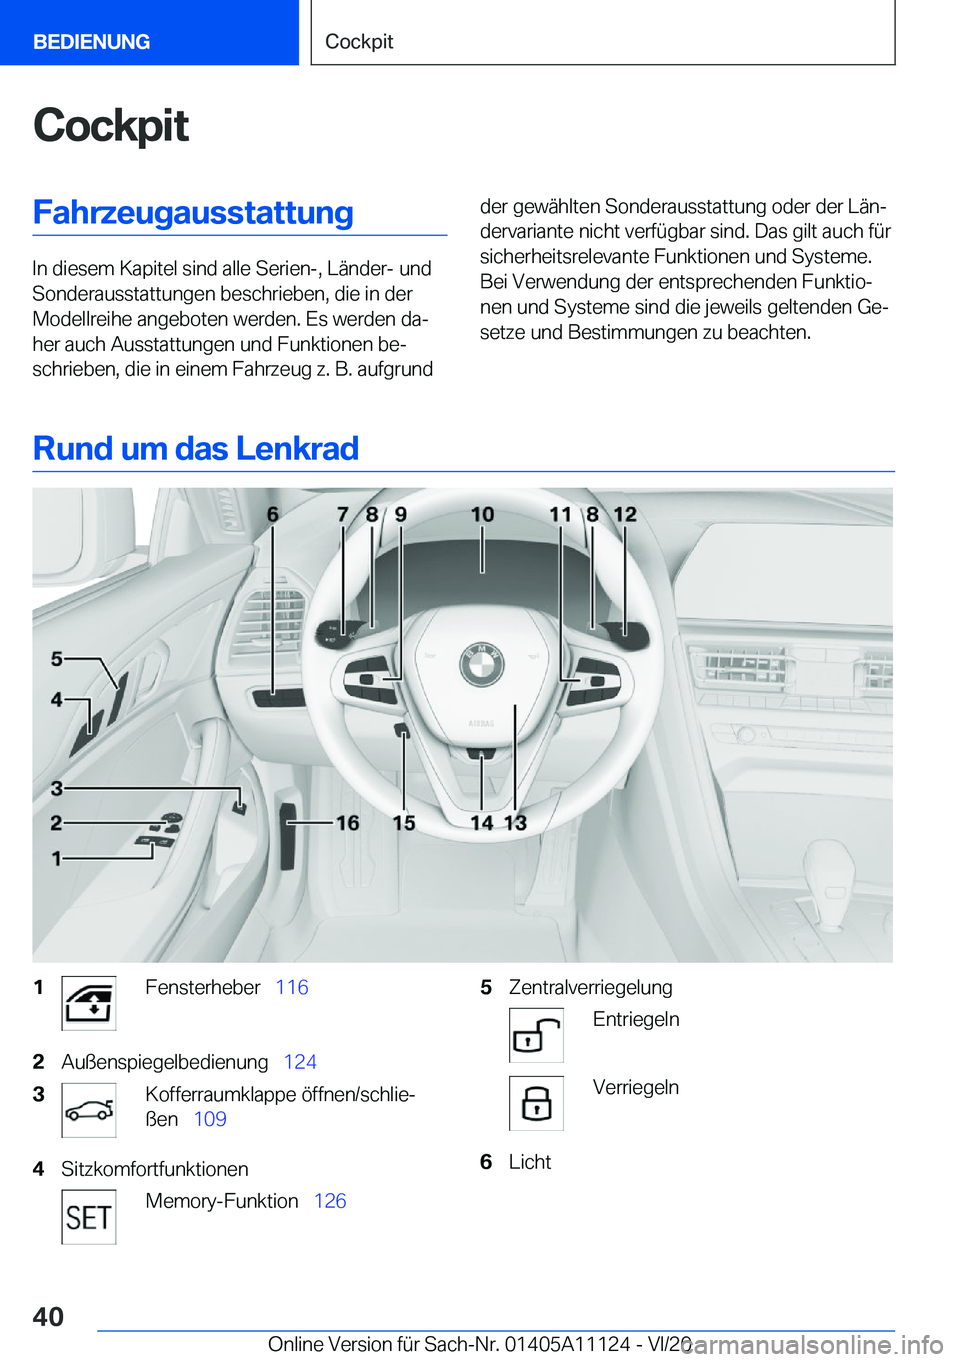 BMW 8 SERIES COUPE 2021  Betriebsanleitungen (in German) �C�o�c�k�p�i�t�F�a�h�r�z�e�u�g�a�u�s�s�t�a�t�t�u�n�g
�I�n��d�i�e�s�e�m��K�a�p�i�t�e�l��s�i�n�d��a�l�l�e��S�e�r�i�e�n�-�,��L�